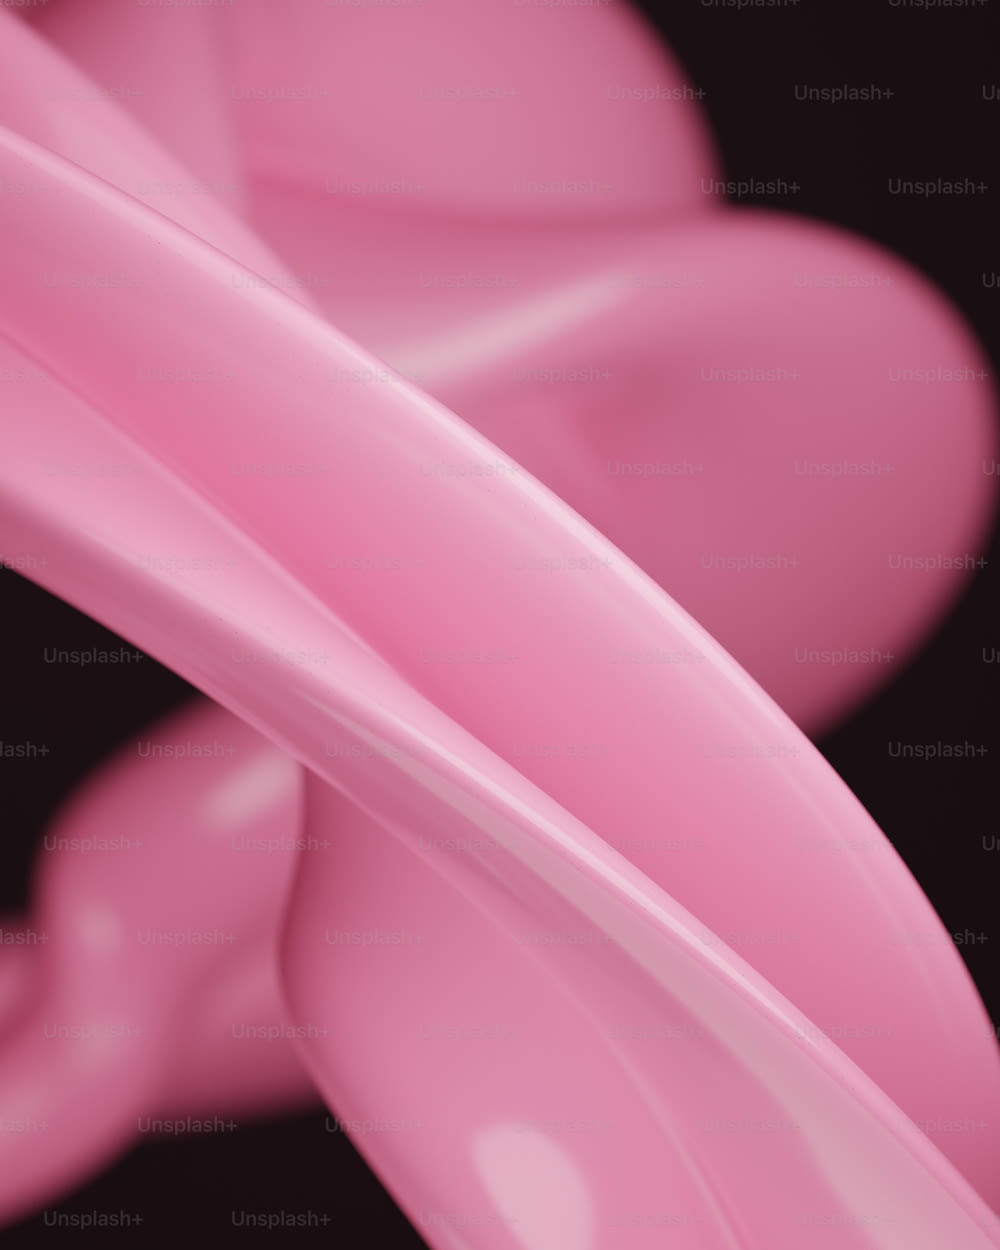 Un primer plano de un objeto rosa sobre un fondo negro